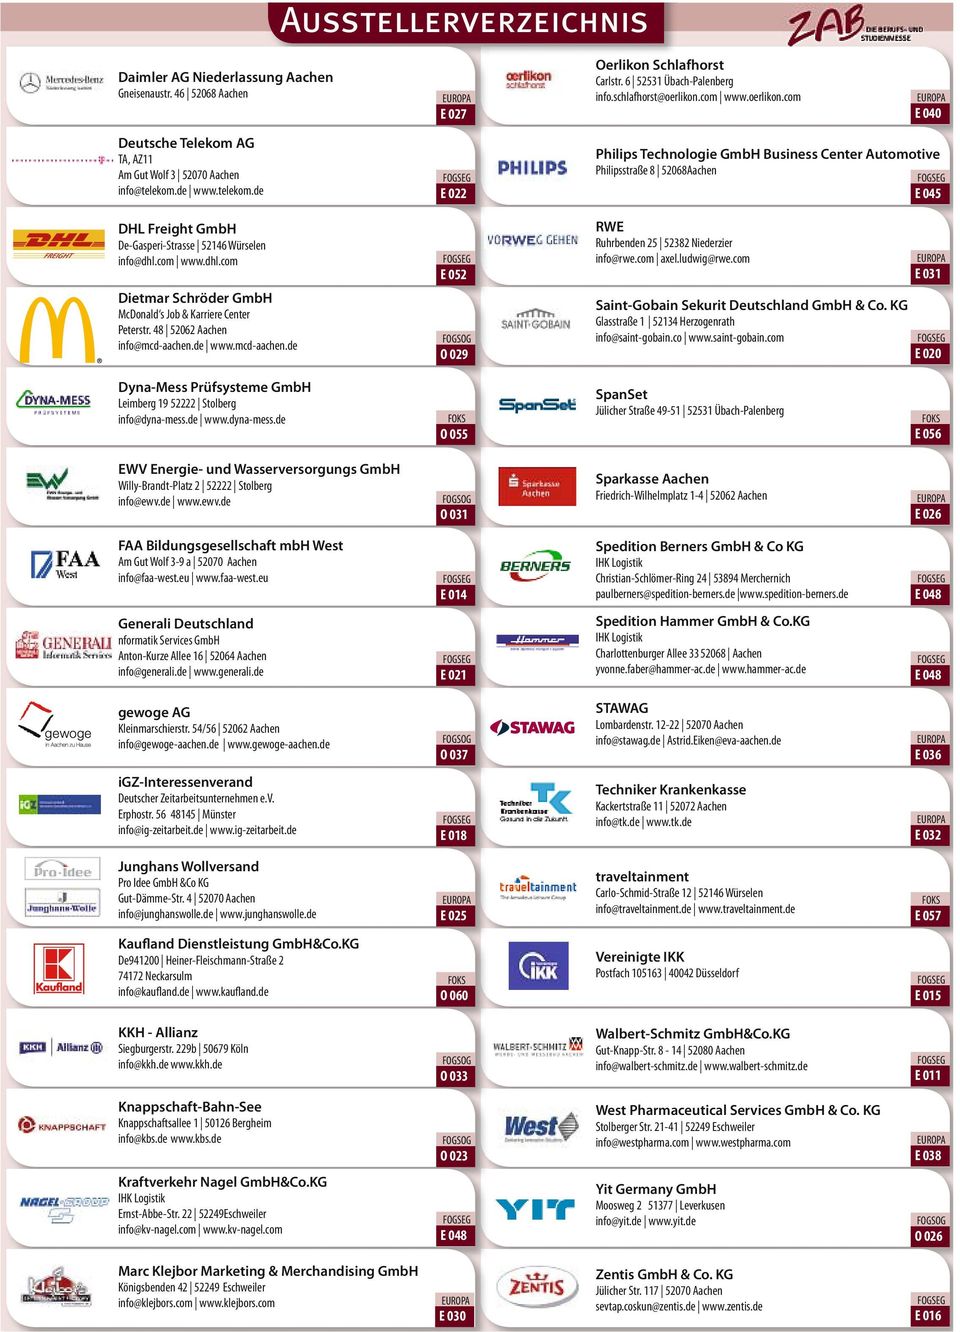 com www.dhl.com Dietmar Schröder GmbH McDonald s Job & Karriere Center Peterstr. 48 52062 Aachen info@mcd-aachen.